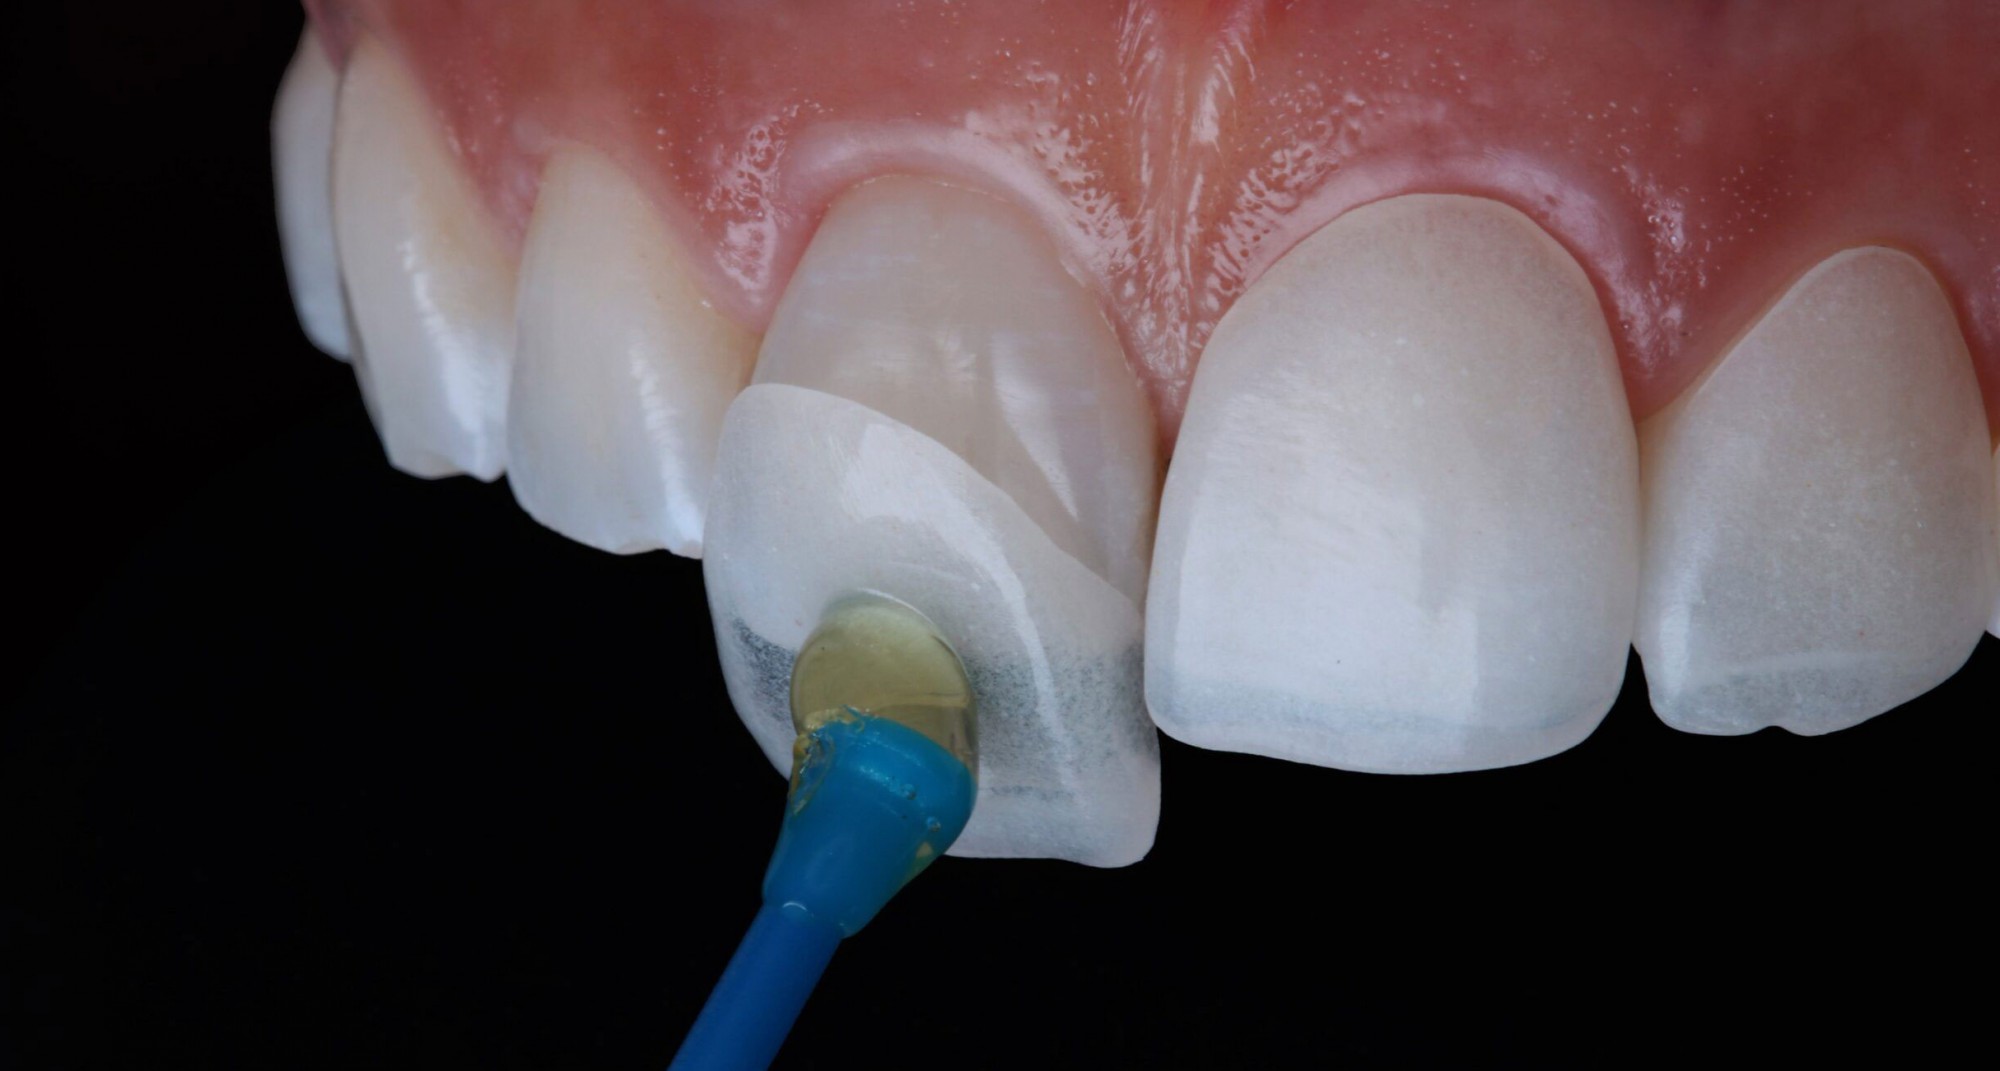 Faccette dentali: cosa sono, i costi e i vantaggi